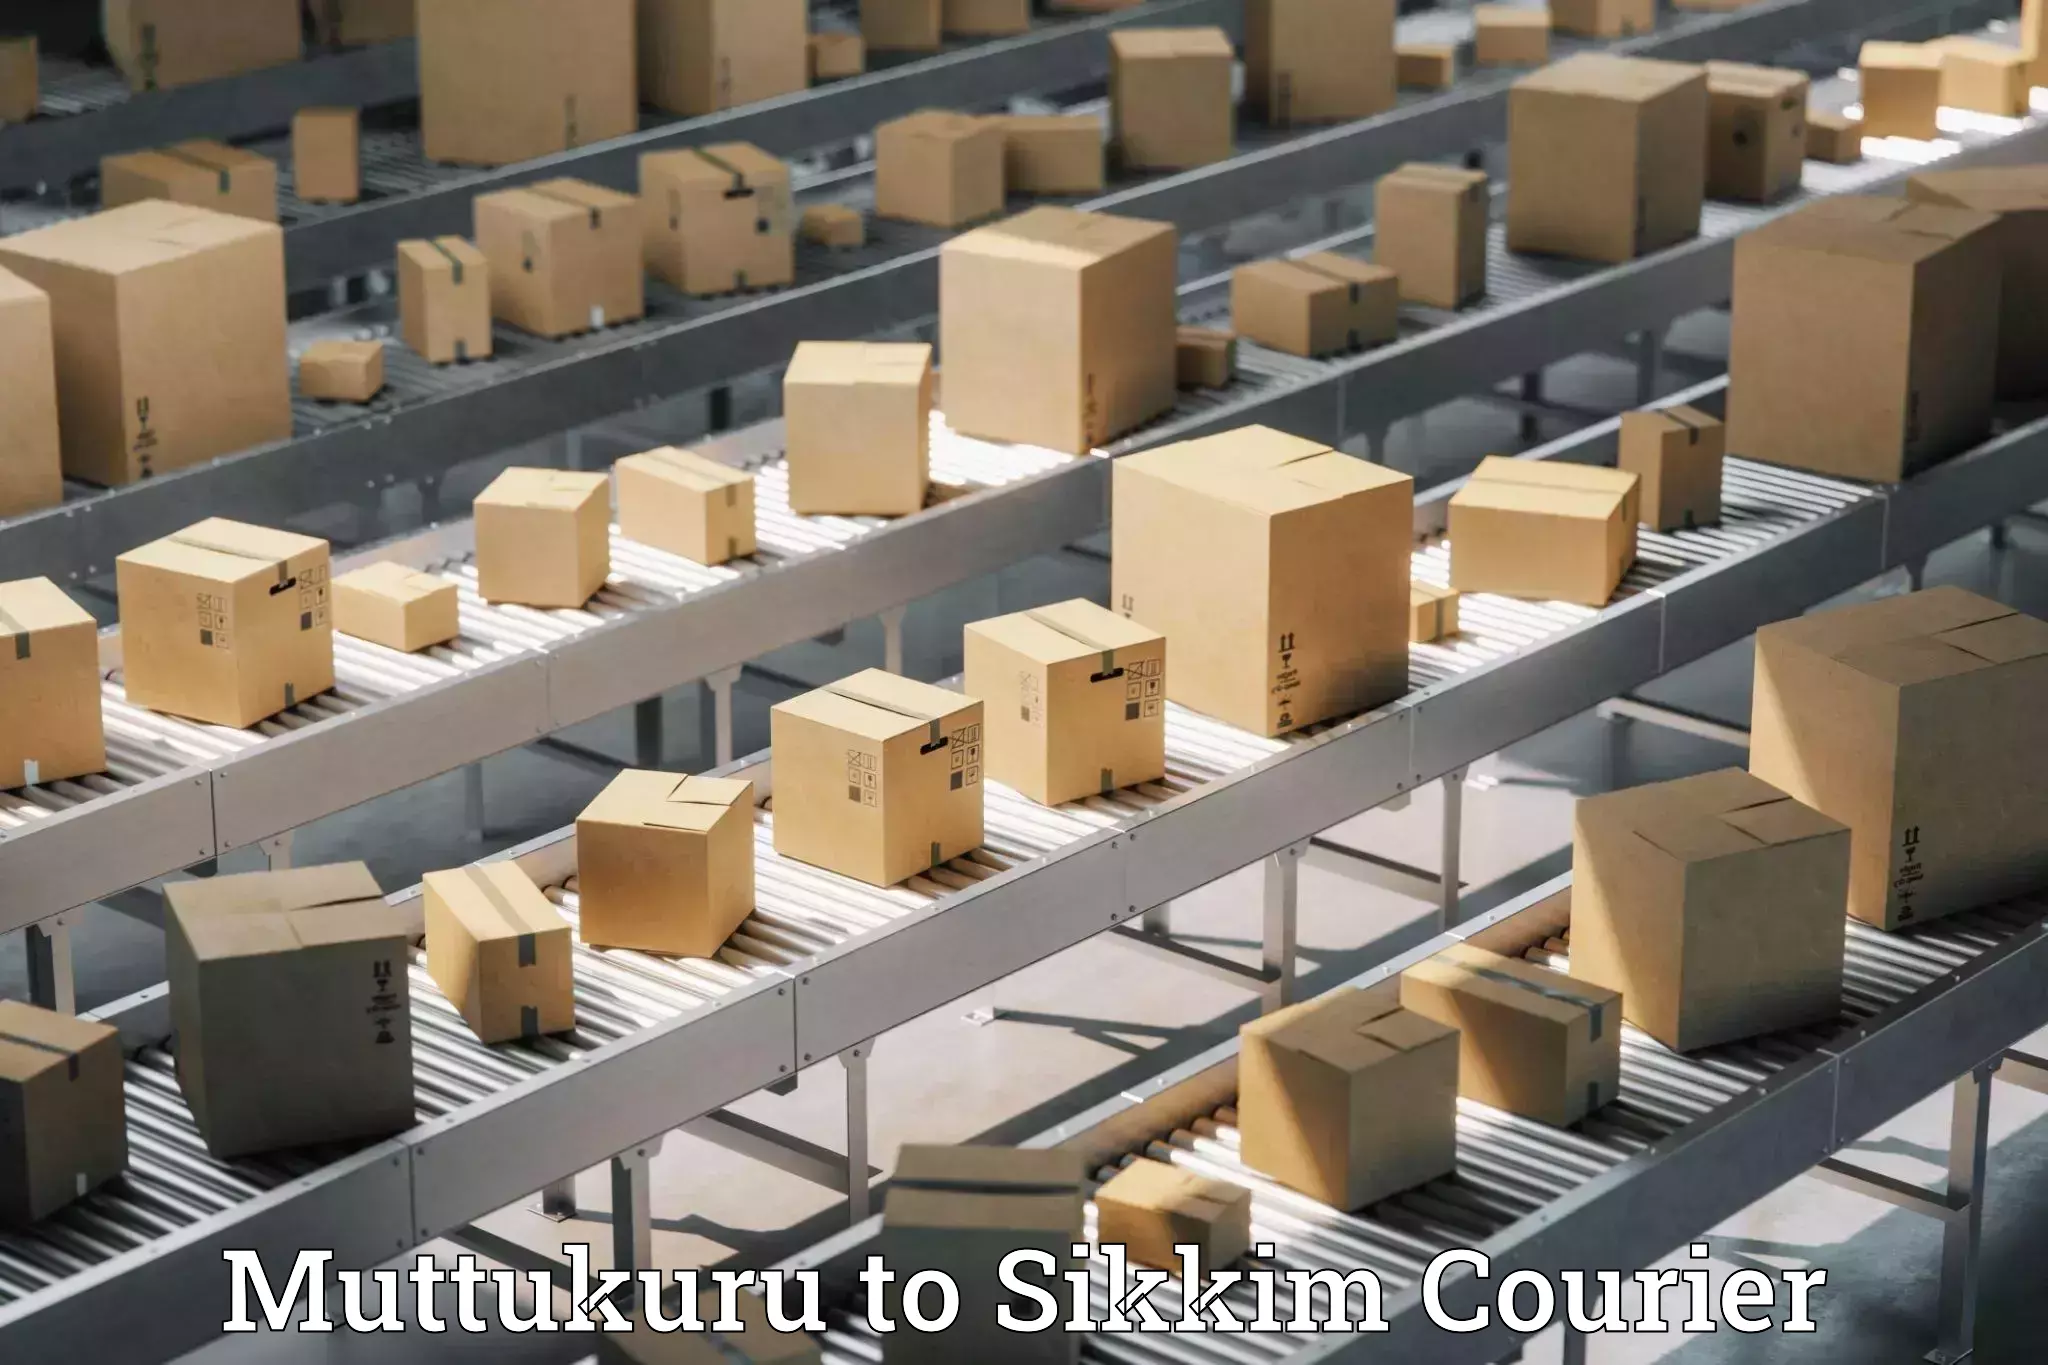 Supply chain efficiency Muttukuru to Pelling